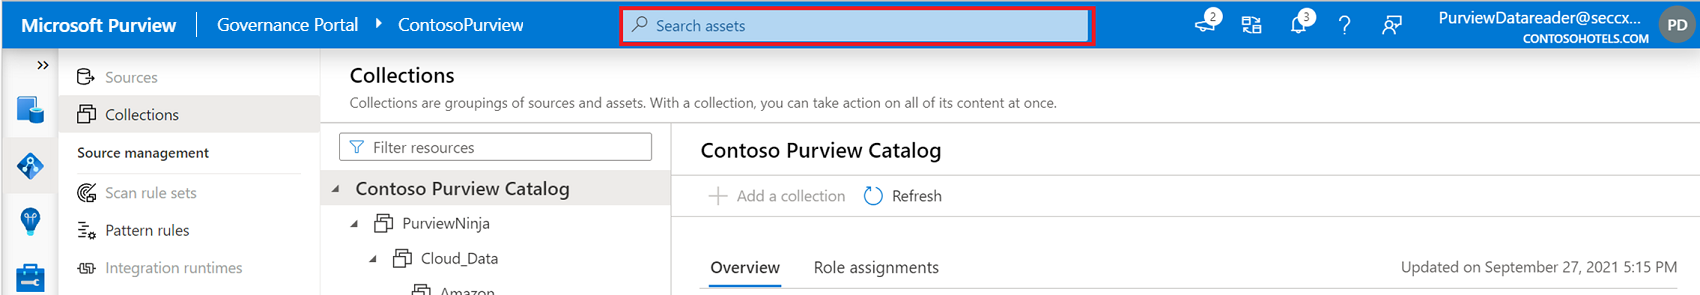 Capture d’écran montrant l’emplacement de la barre de recherche Microsoft Purview